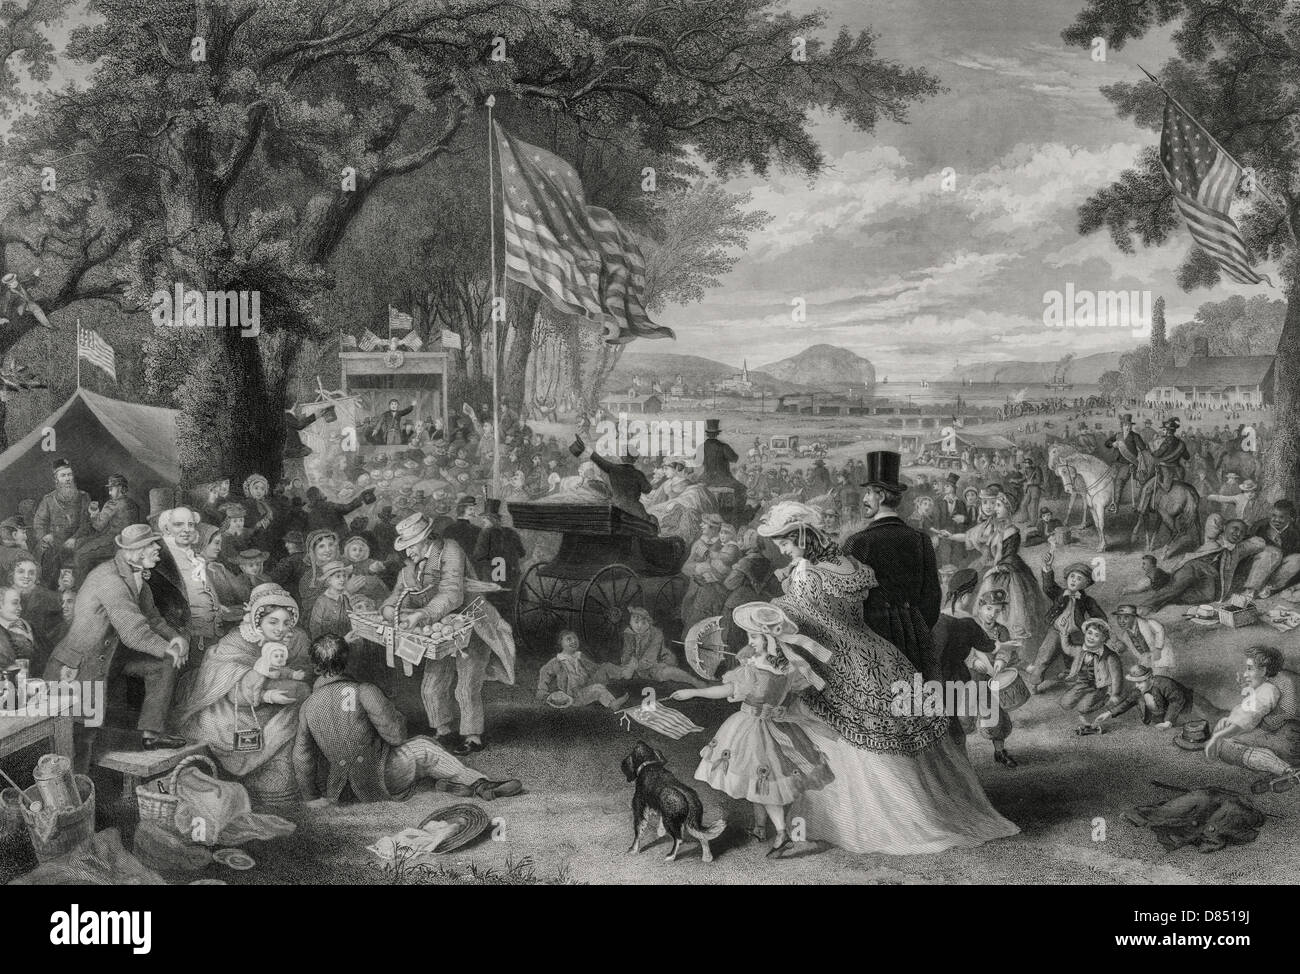 "Der Tag wir feiern" 1876 eine große Versammlung von Menschen picknicken, spielen und genießen die Independence Day Feier im Freien unter großen Bäumen und offenen Rasen, mit Fernblick über eine Eisenbahn Zug vorbei und von Schiffen auf einer Wasserstraße in den Hintergrund. Stockfoto